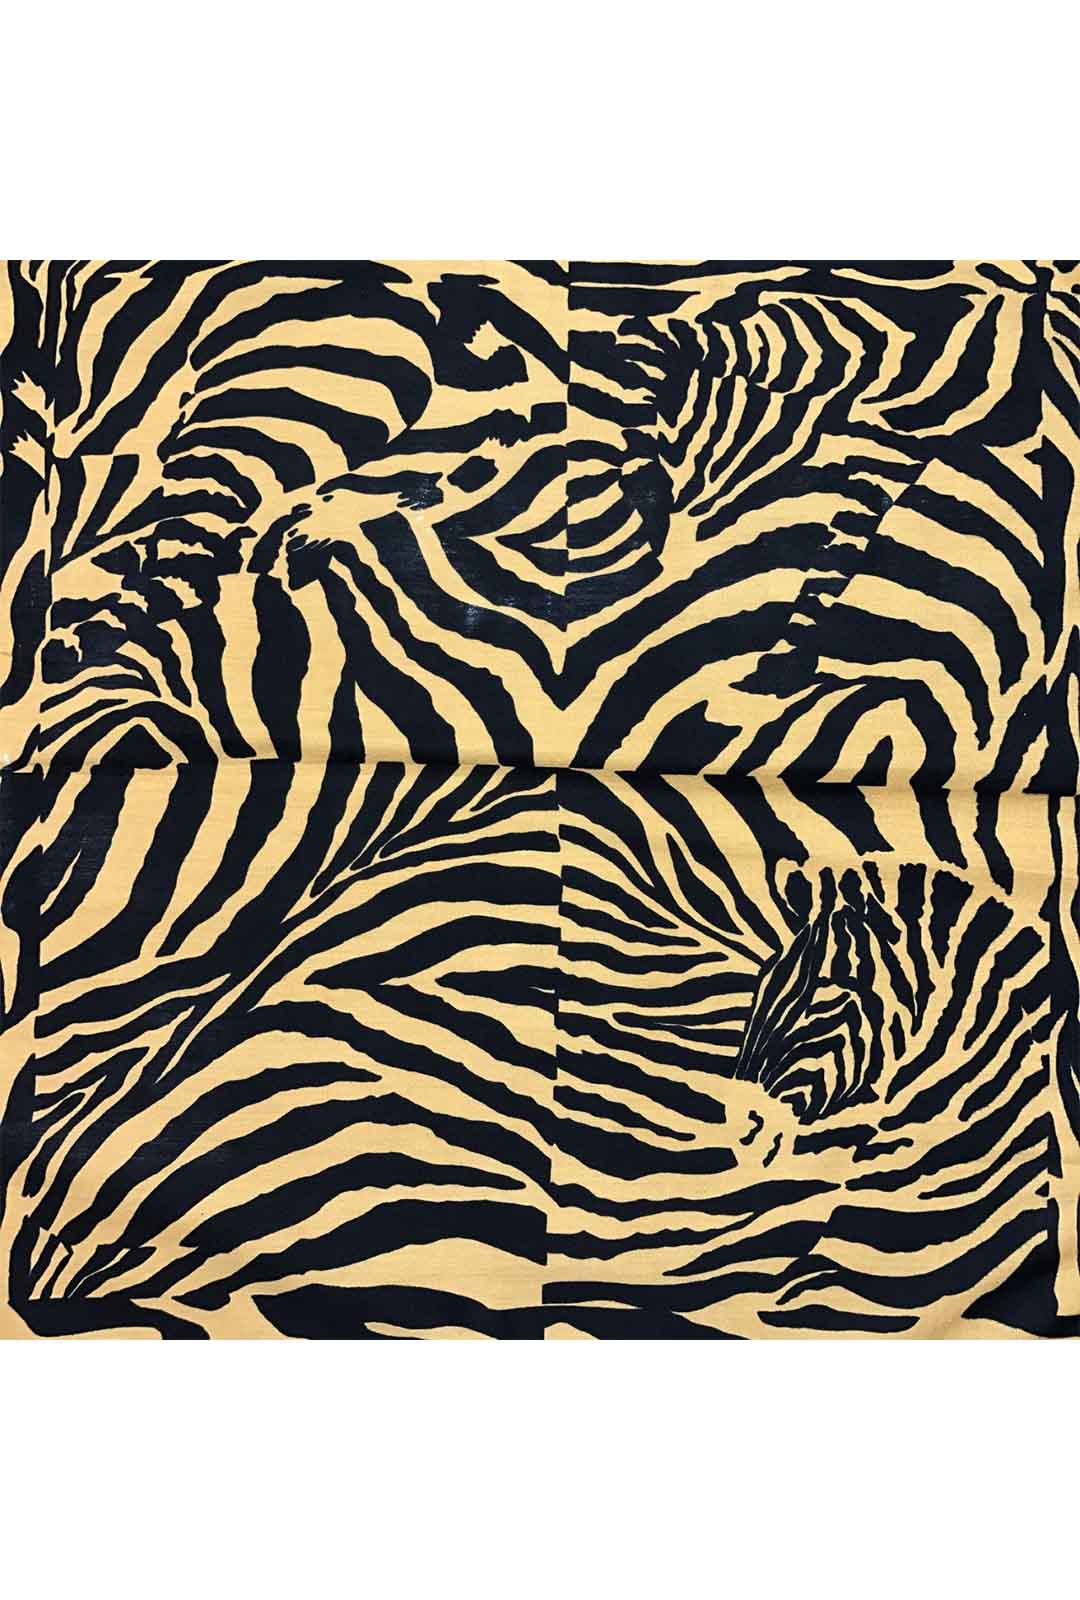 Brown Zebra Print Bandana